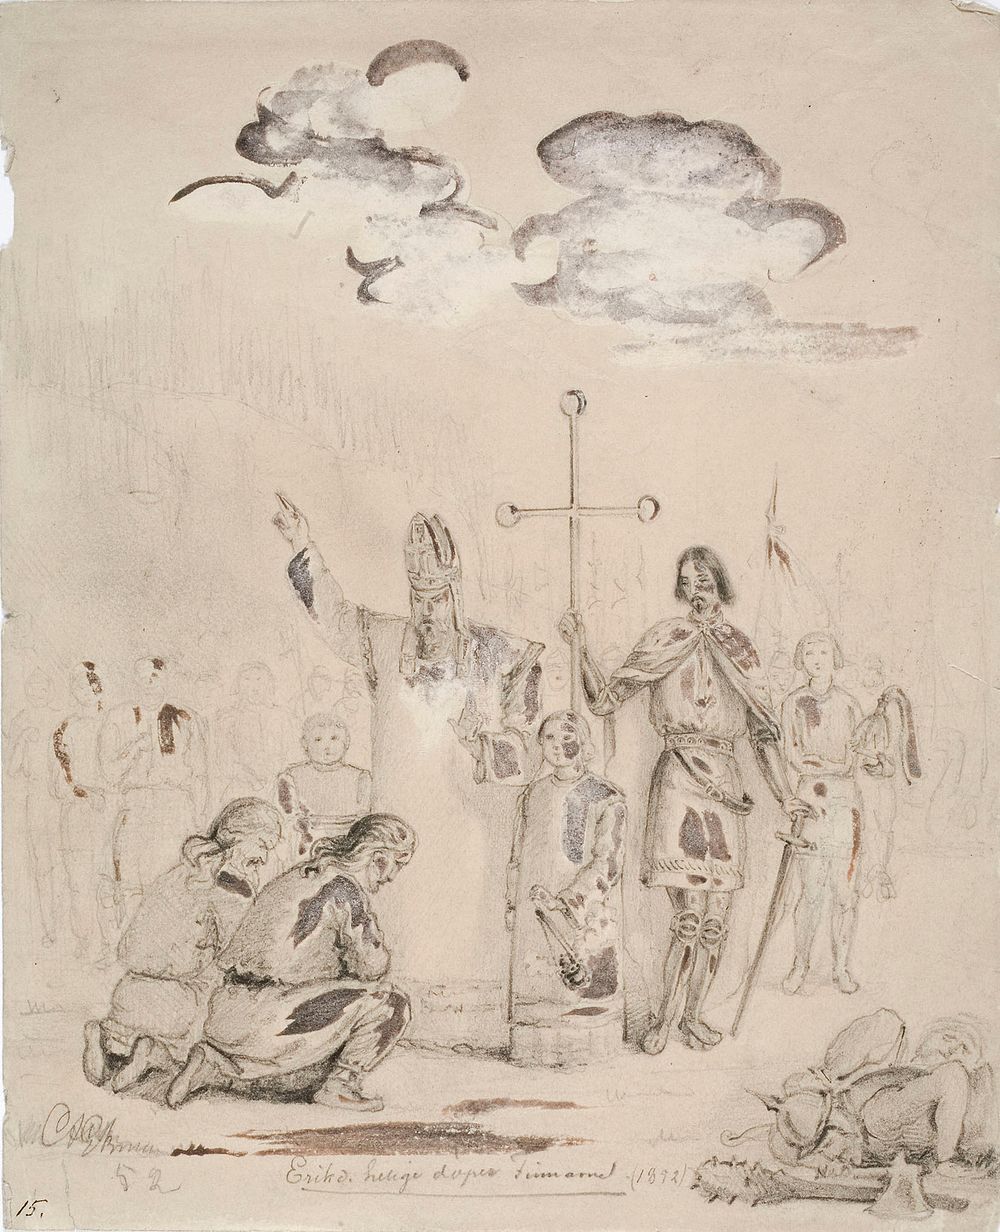 Eerik pyhä kastaa suomalaisia kupittaan lähteellä...., 1852 by Anders Ekman